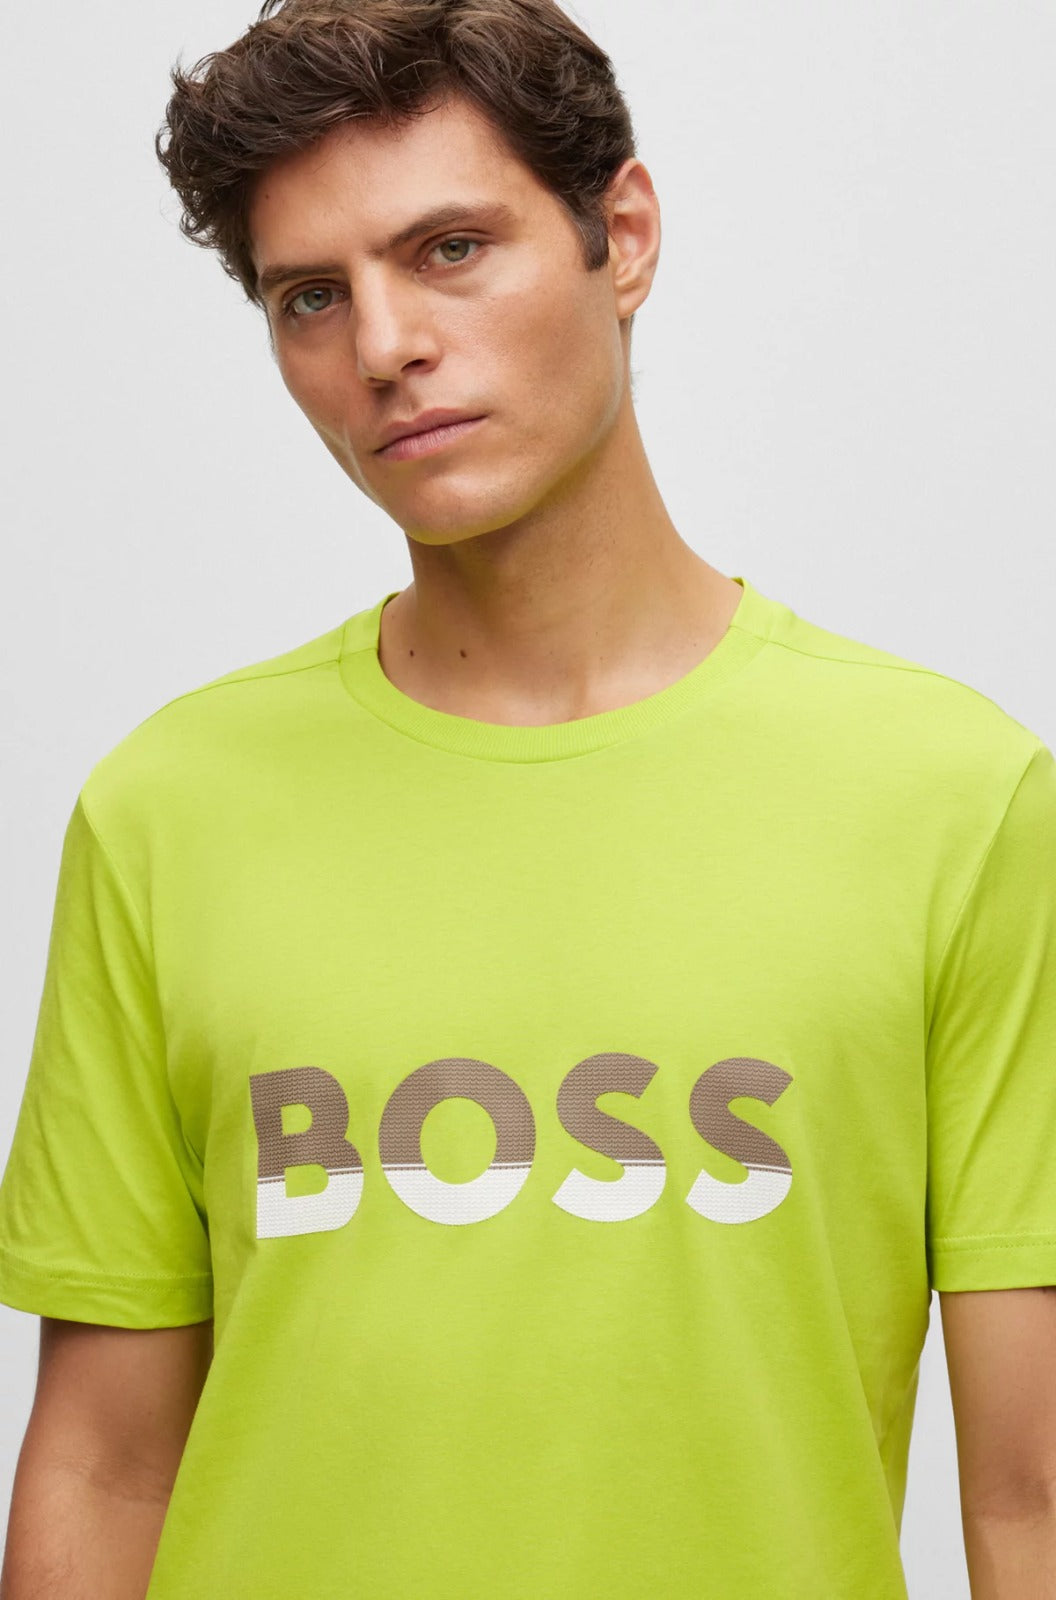 Camiseta Boss Regular Bright Green